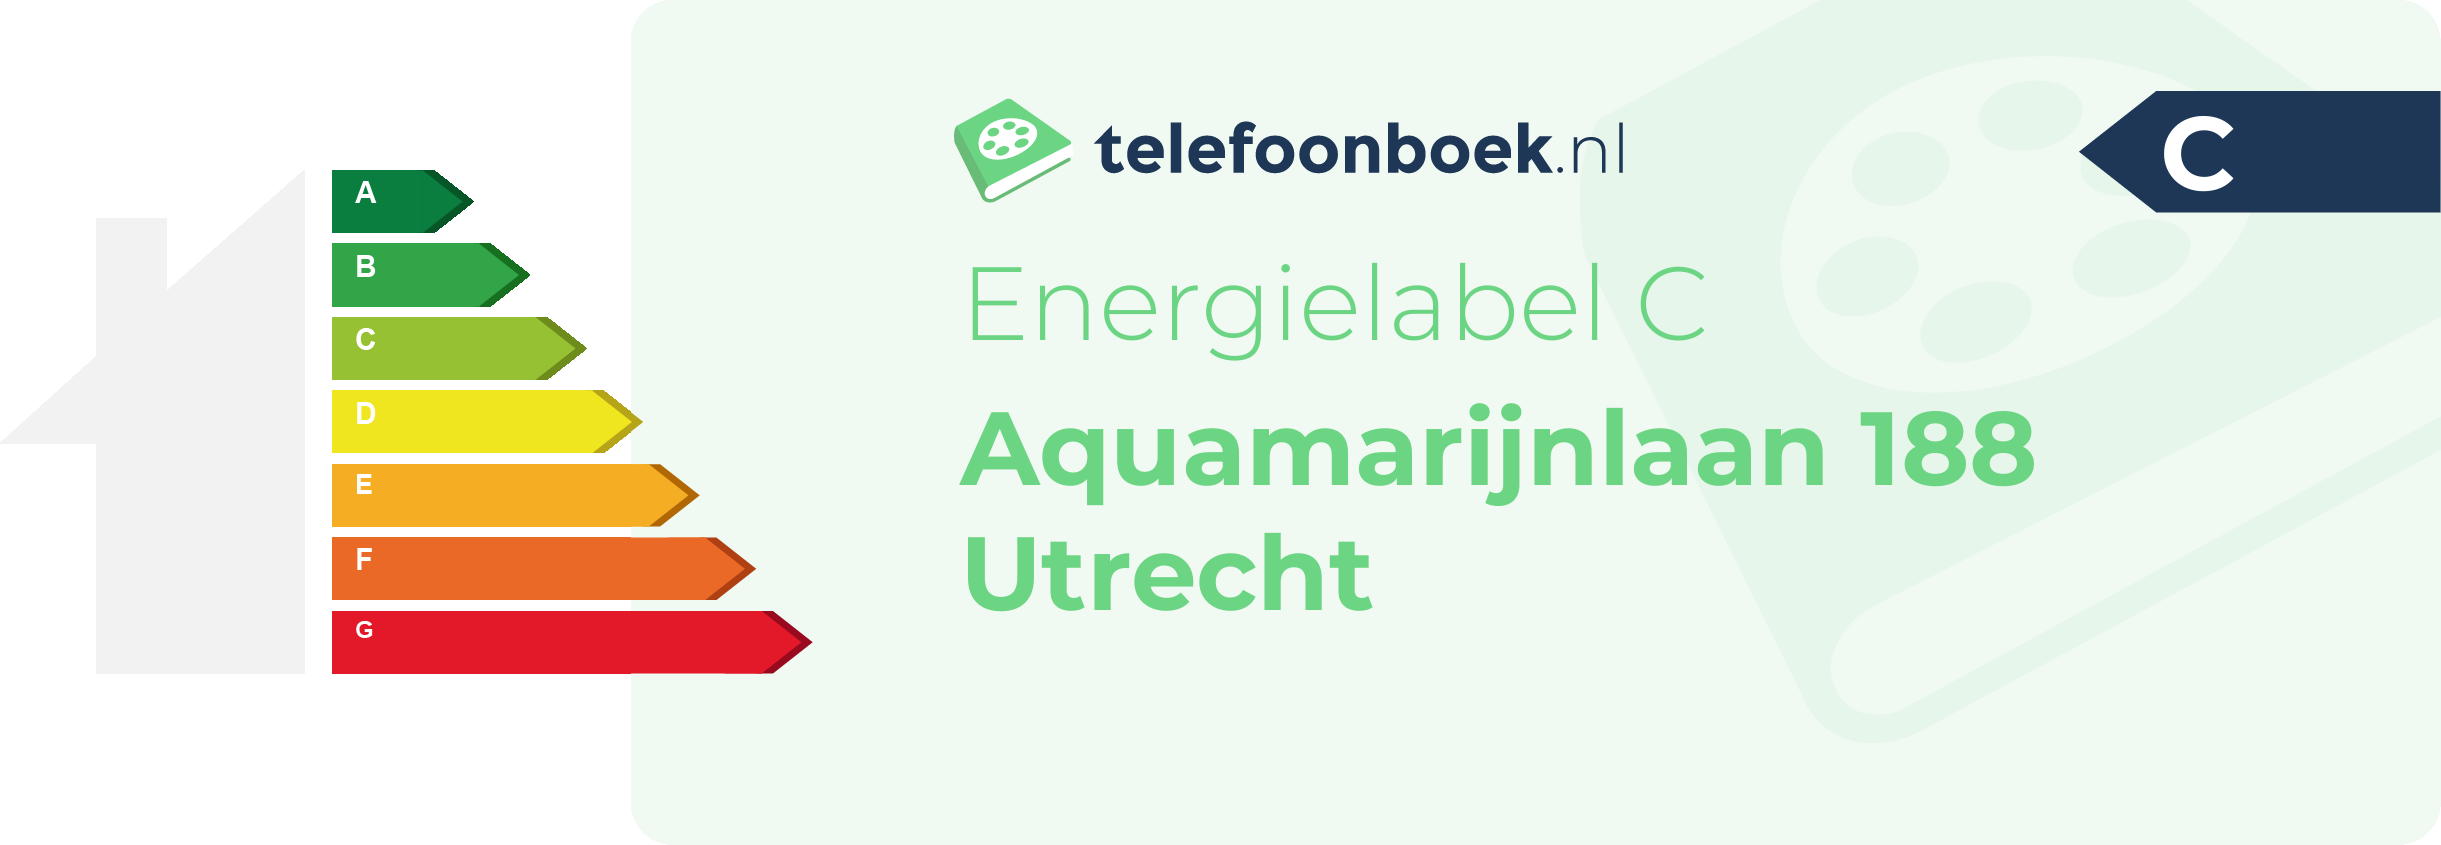 Energielabel Aquamarijnlaan 188 Utrecht